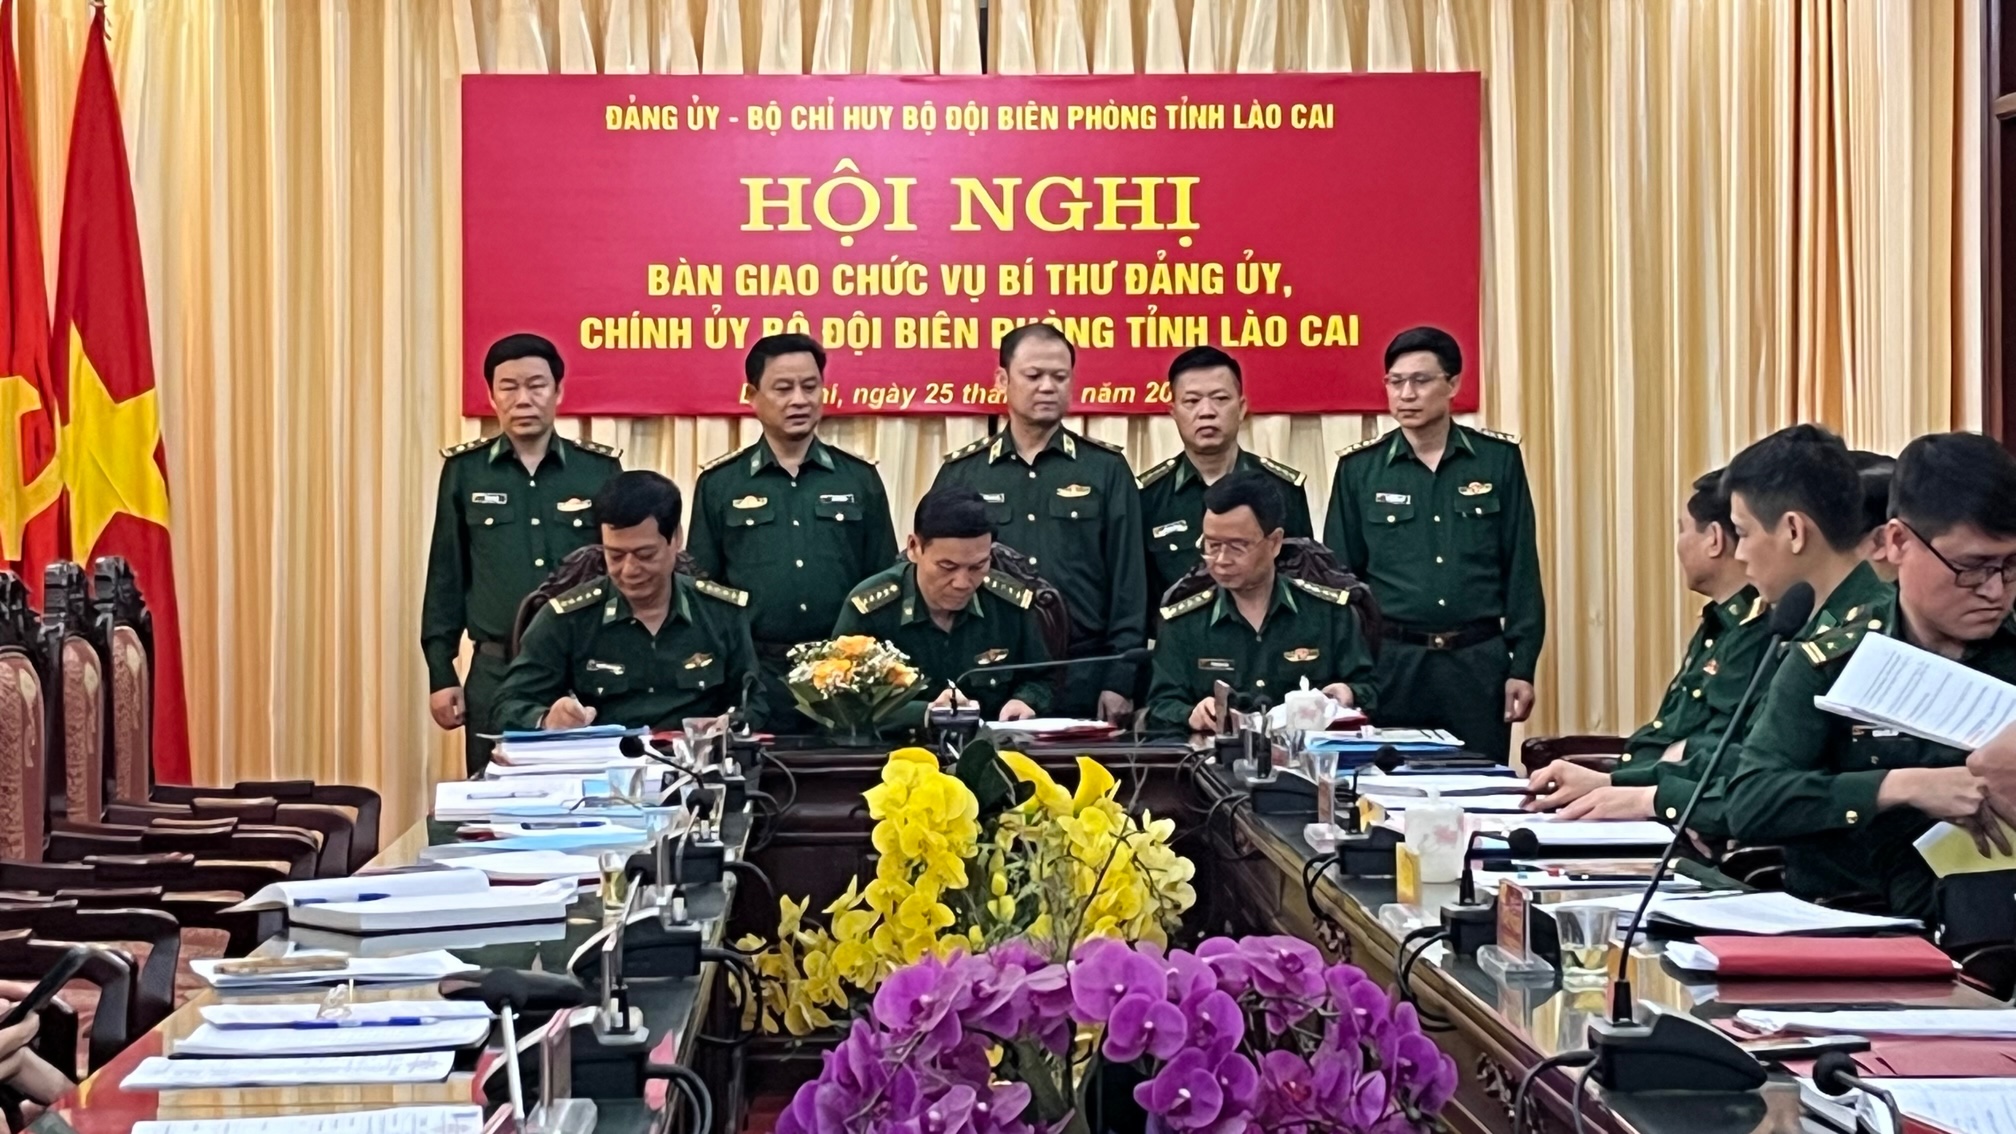 Trung tướng Nguyễn Anh Tuấn cùng lãnh đạo Bộ Chỉ huy BĐBP tỉnh Lào Cai chứng kiến buổi ký kết bàn giao chức vụ Bí thư Đảng ủy và Chính ủy BĐBP tỉnh.jpg